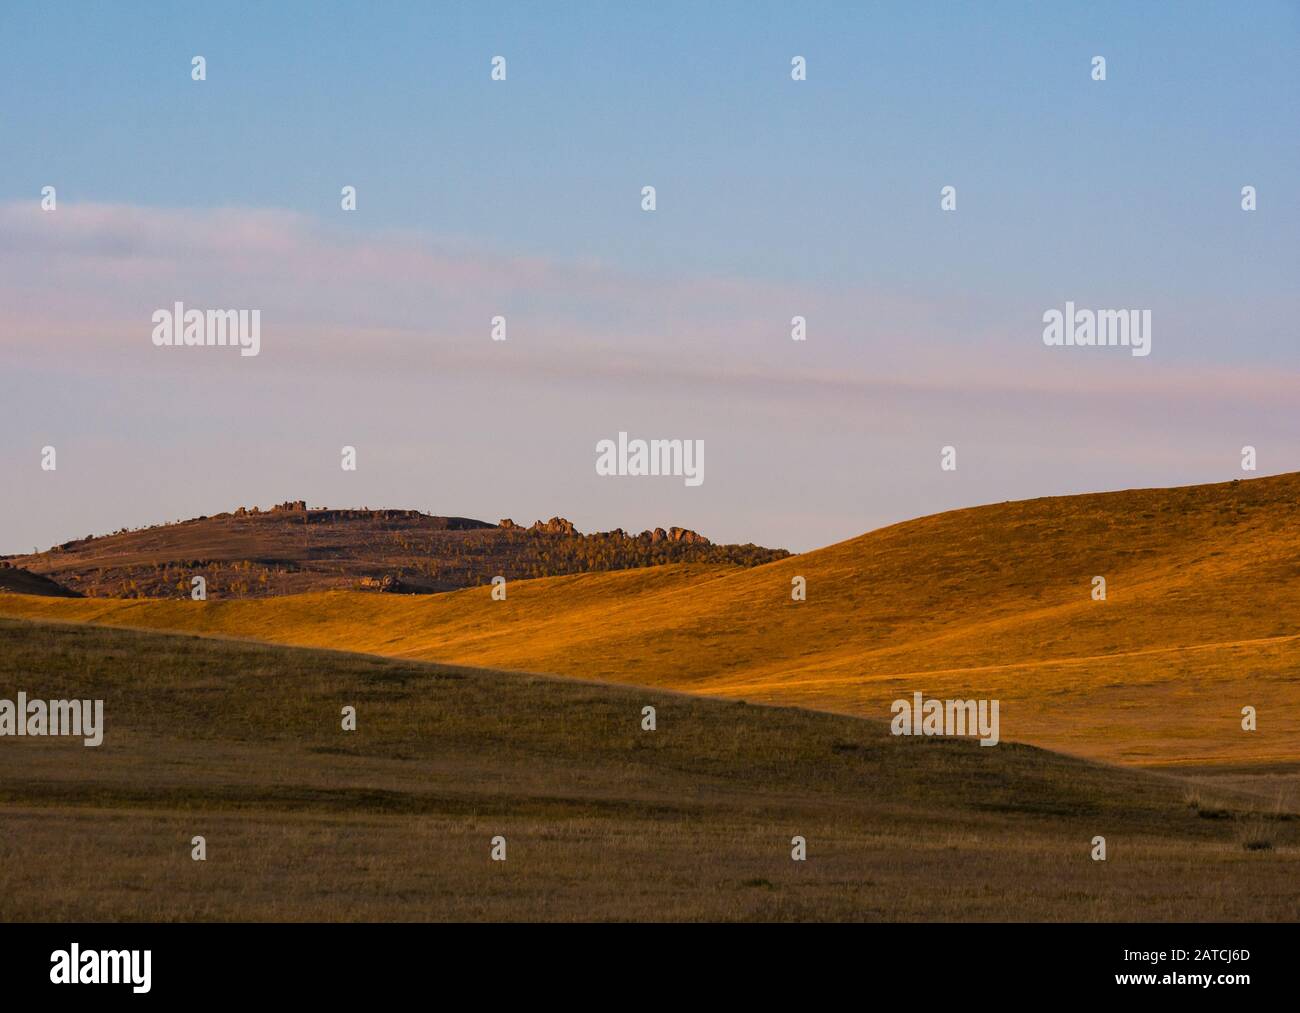 Paisaje de pastizales de estepa, reserva natural del Parque Nacional Hustai o Khustain Nanuu, provincia de Tov, Mongolia, Asia Foto de stock